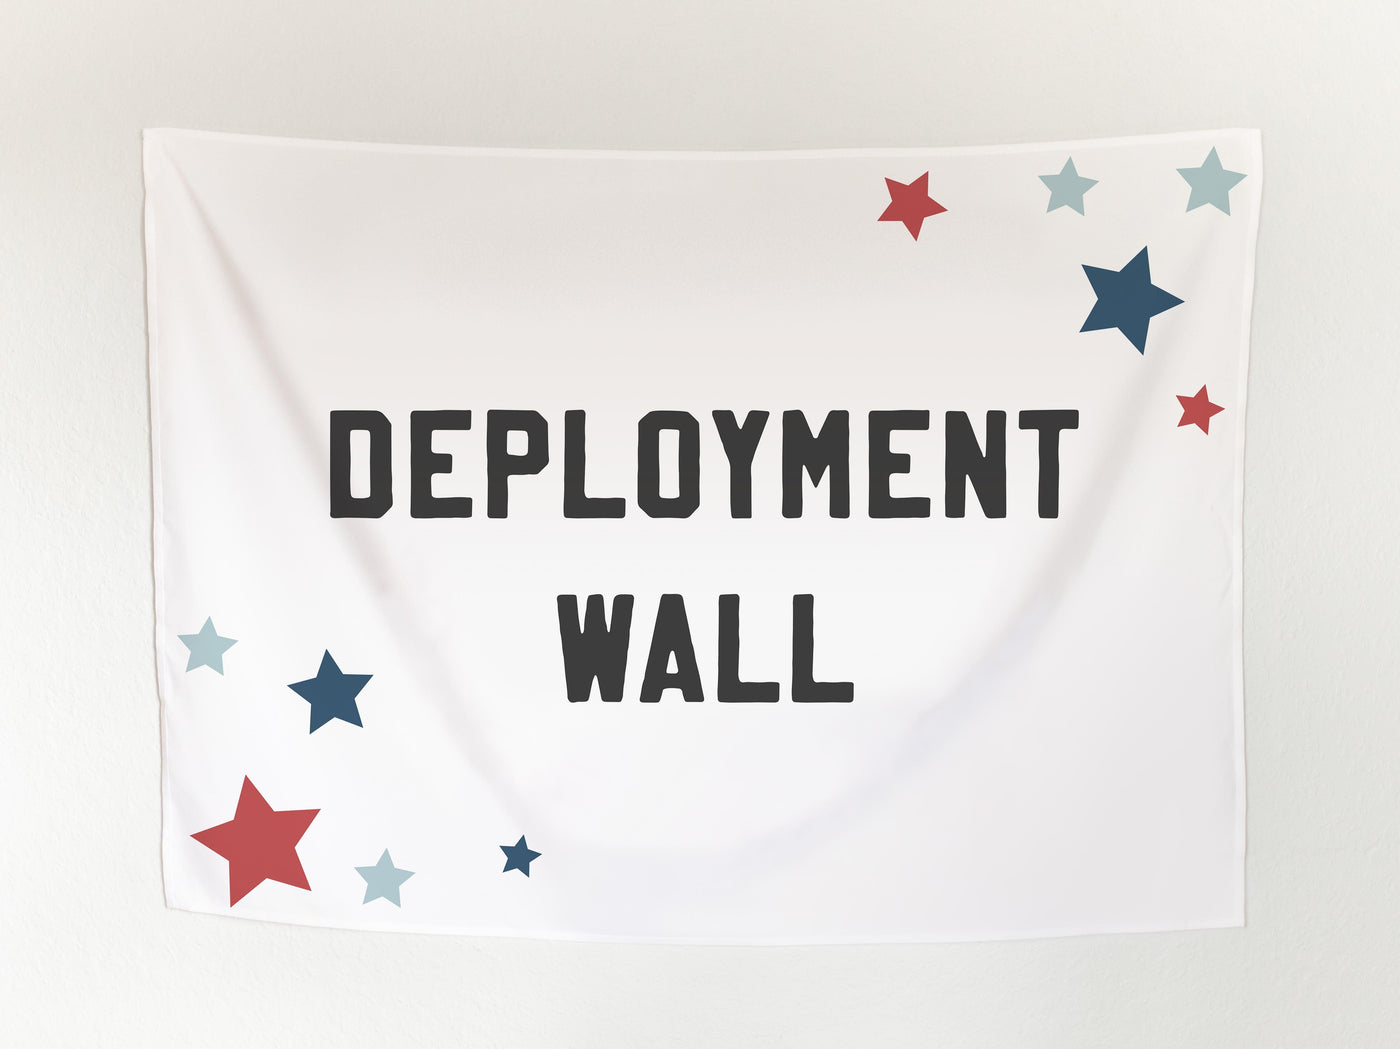 Deployment Wall Banner